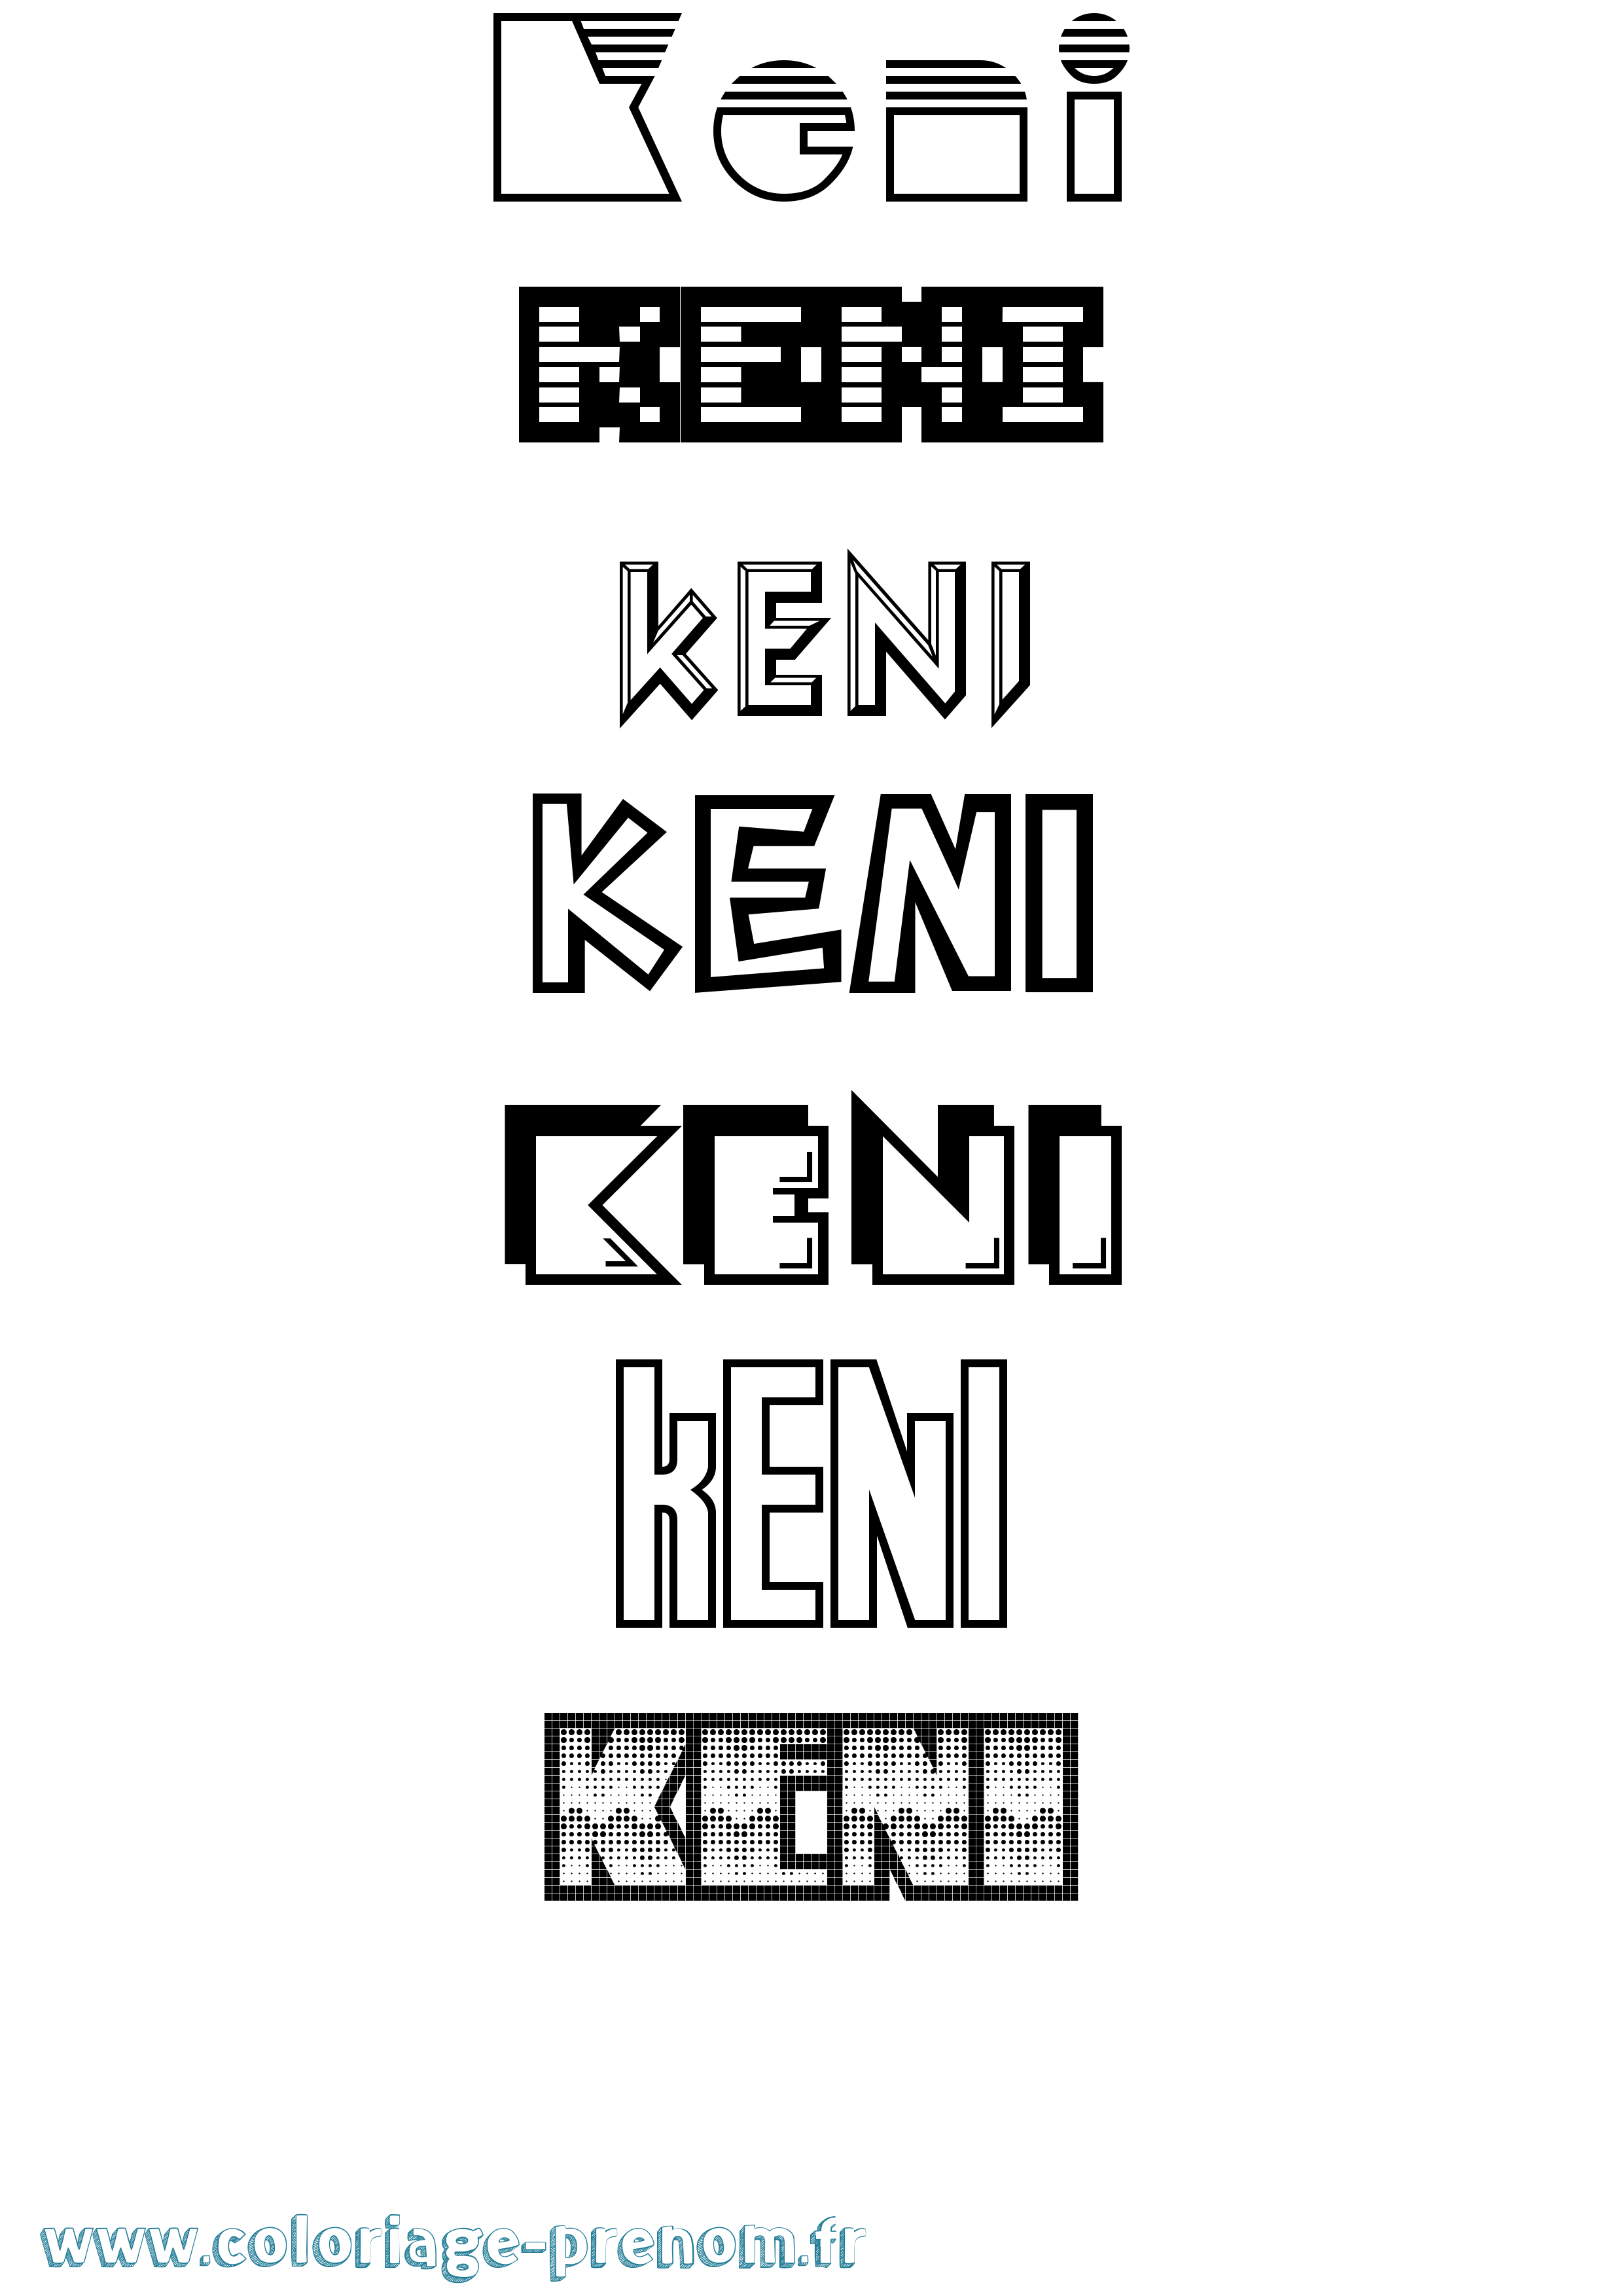 Coloriage prénom Keni Jeux Vidéos